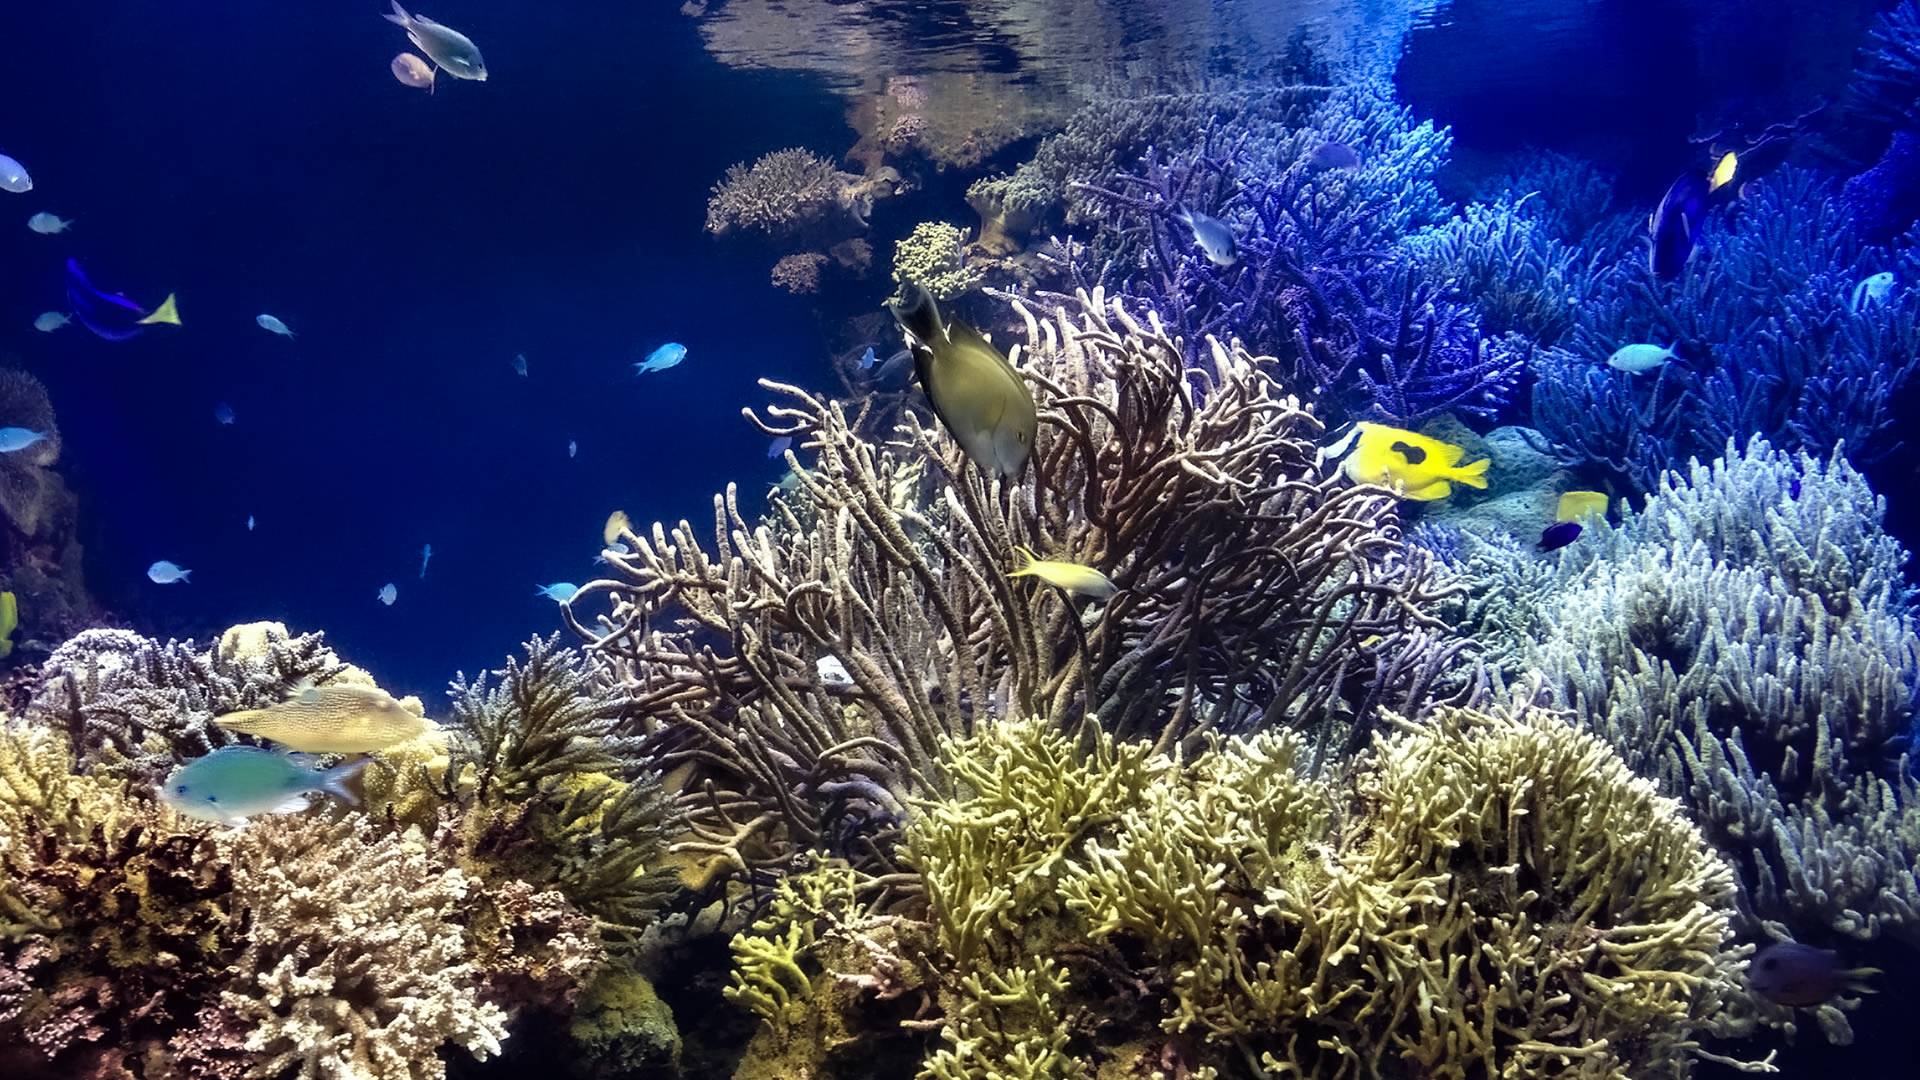 水槽で泳ぐかわいい熱帯魚 無料画像 フリー写真素材 Activephotostyle